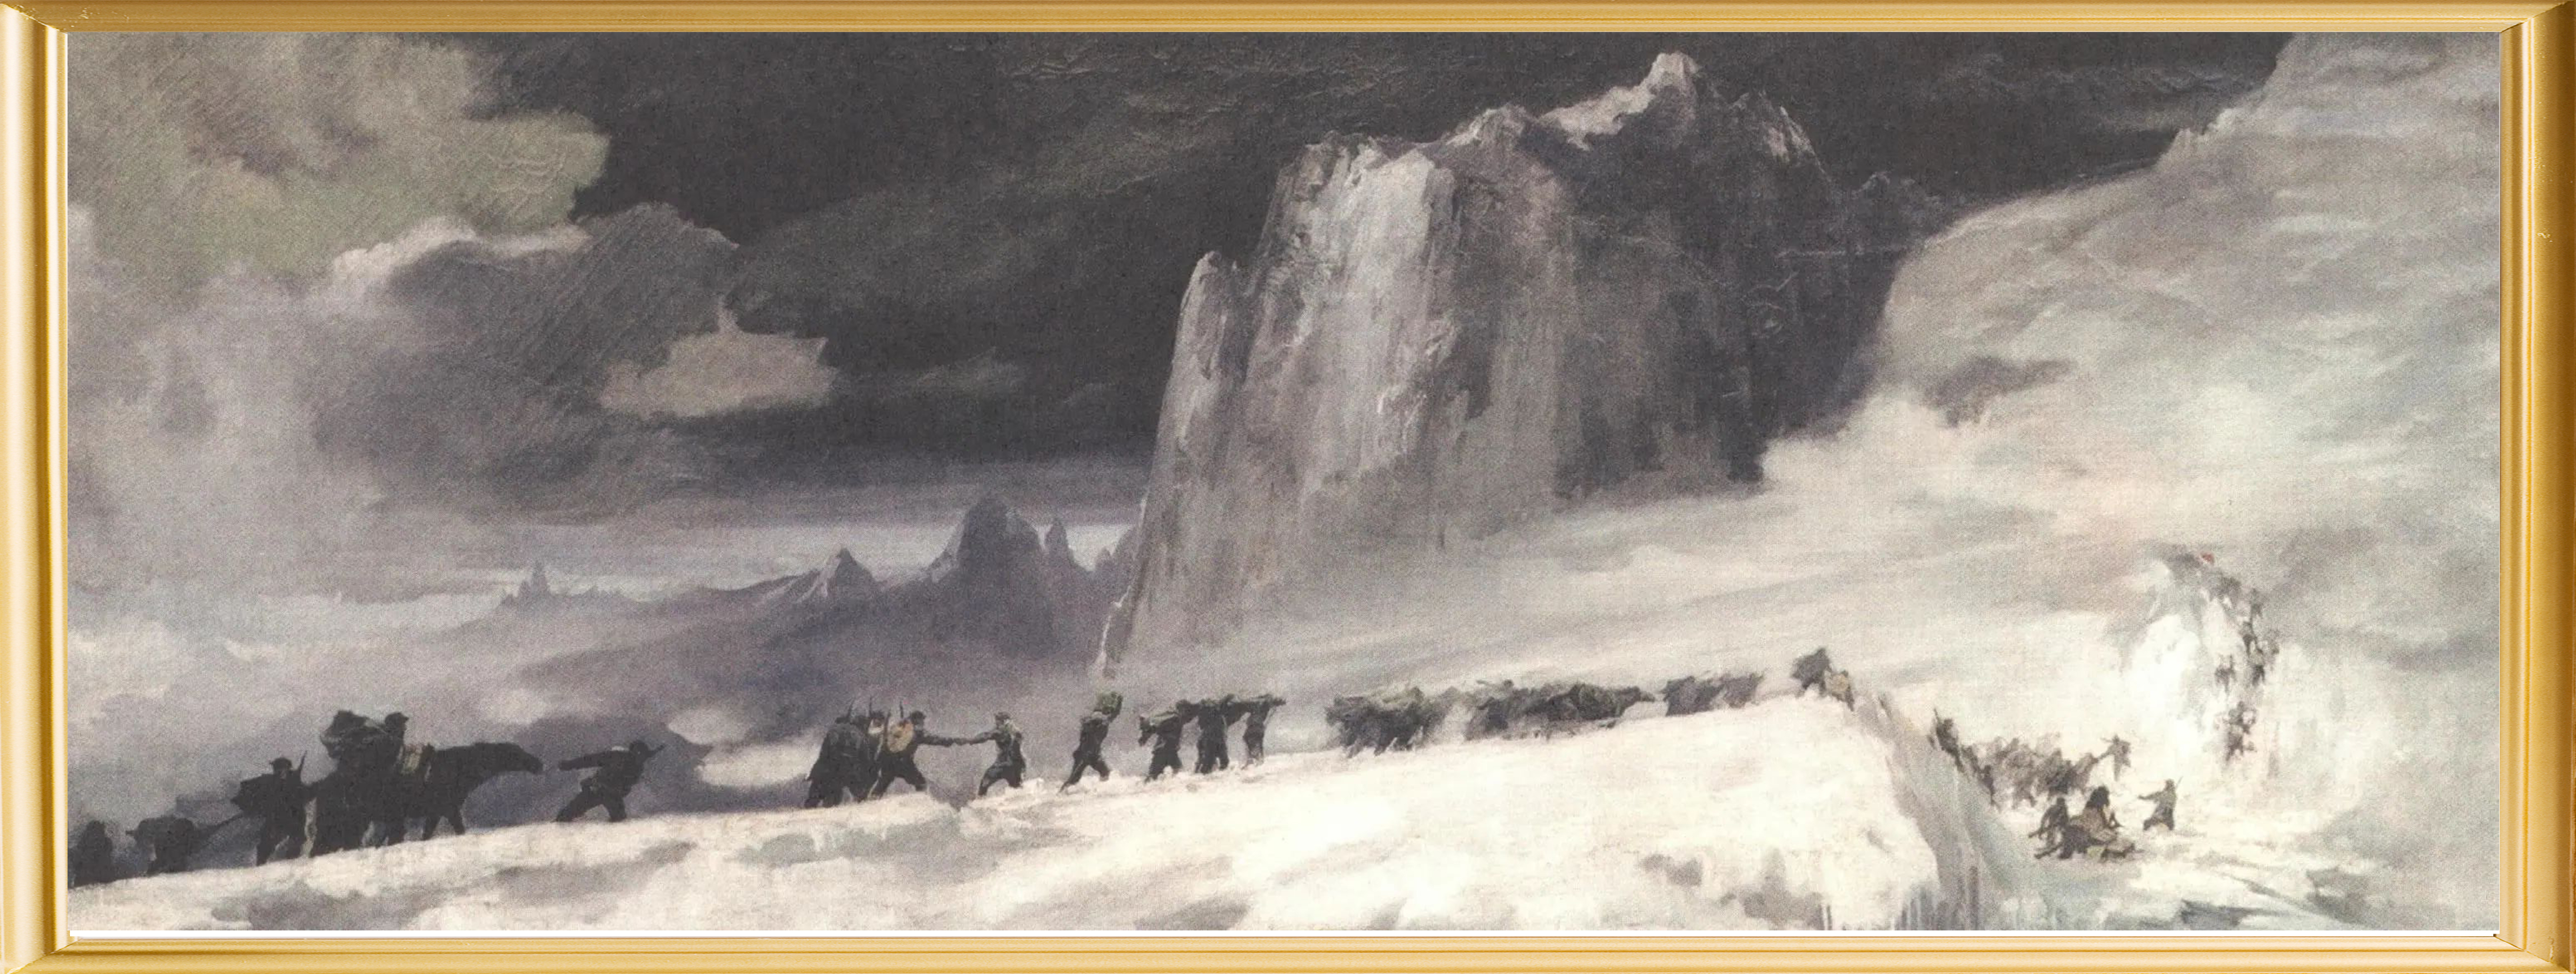 艾中信 《红军过雪山》 1957年